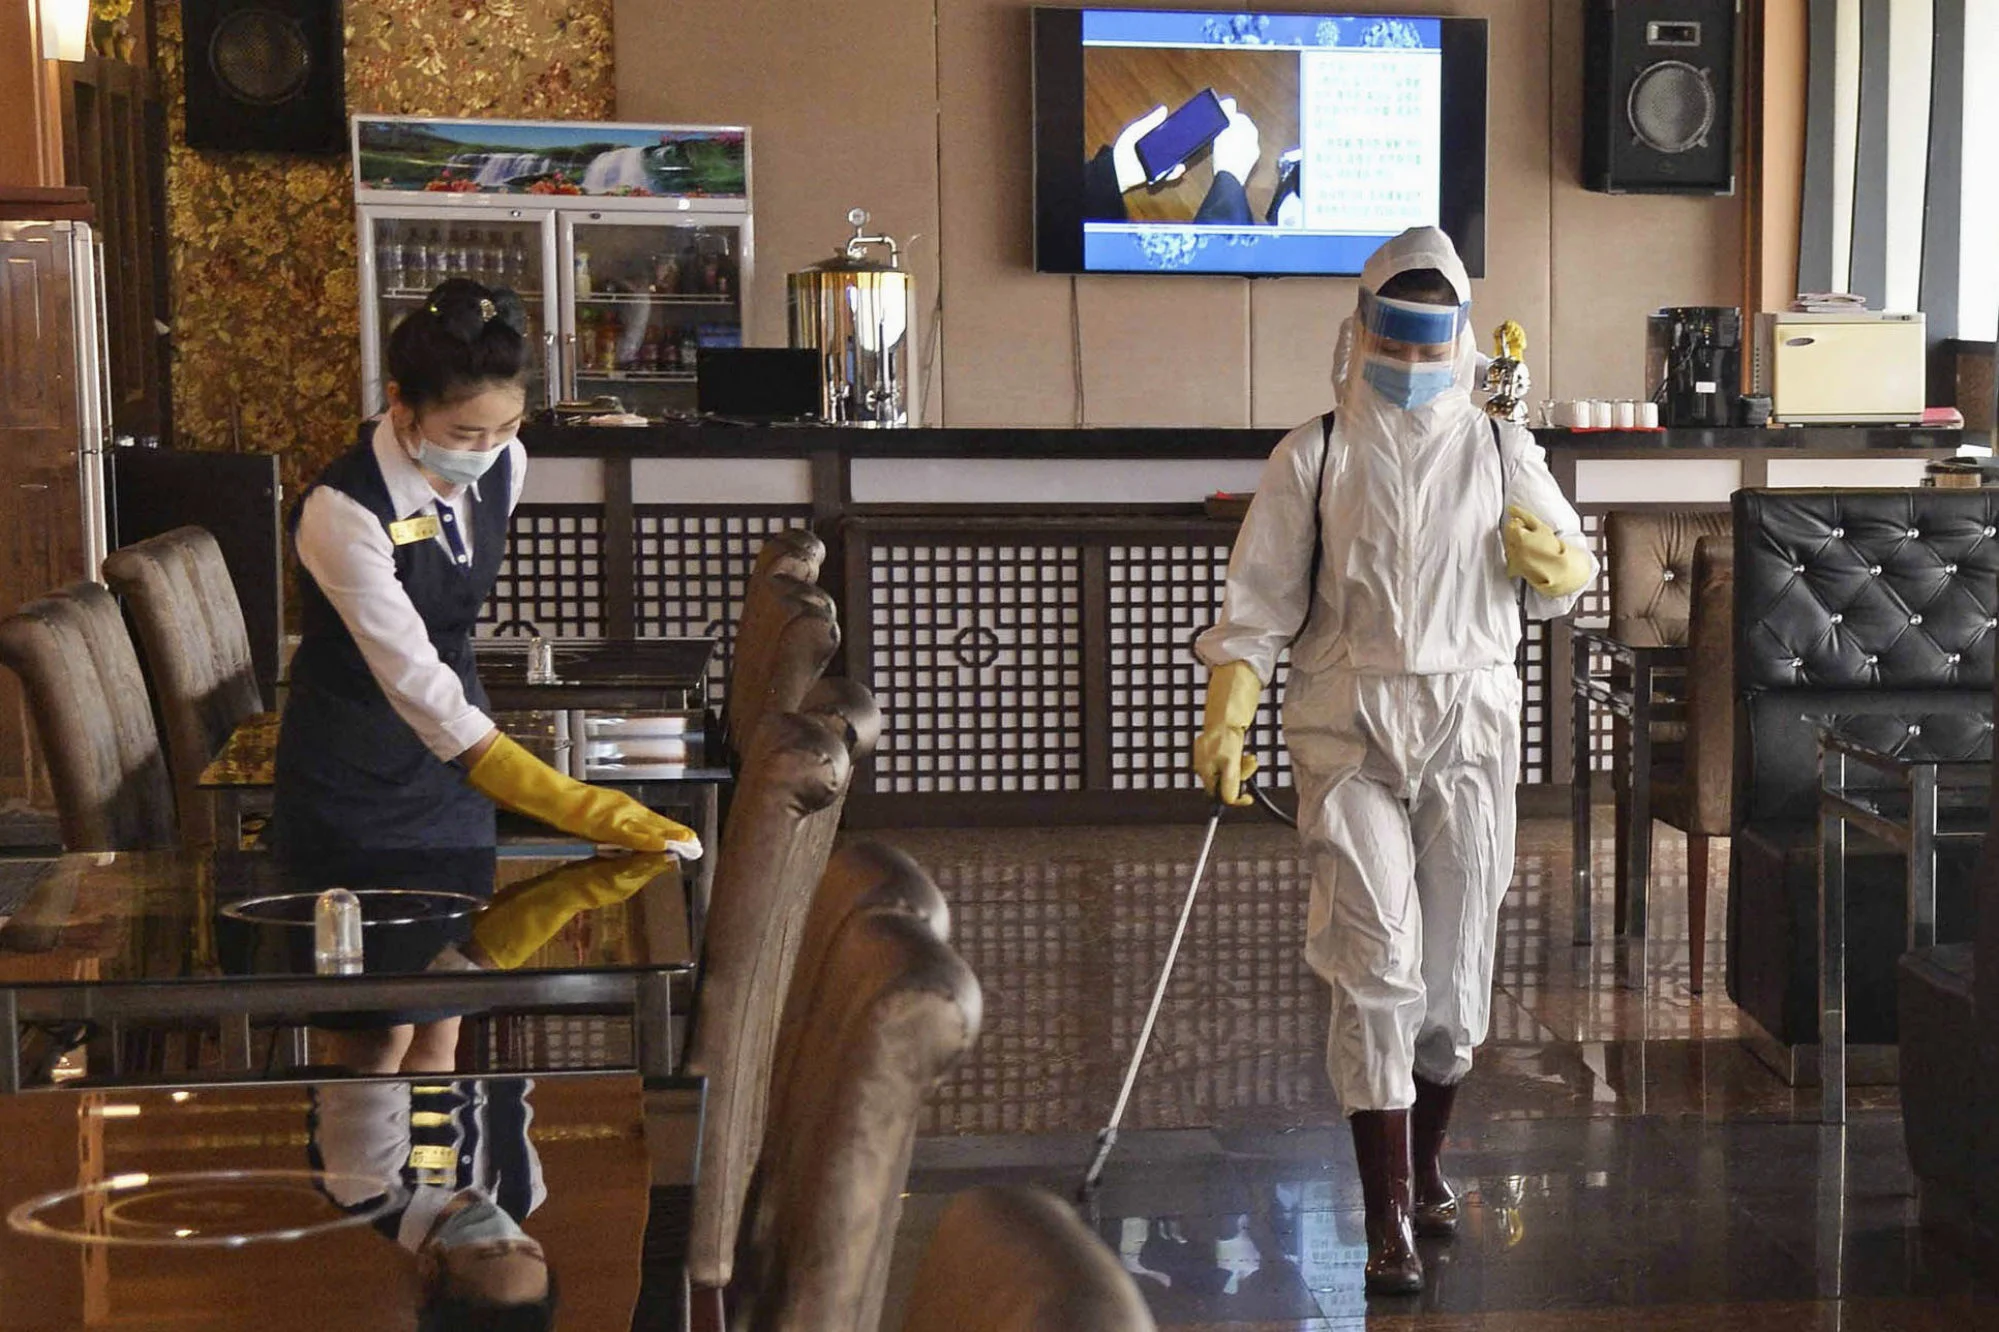 Khử trùng một nhà hàng ở Bình Nhưỡng vào tháng 3 trong bối cảnh lo lắng về Covid-19 